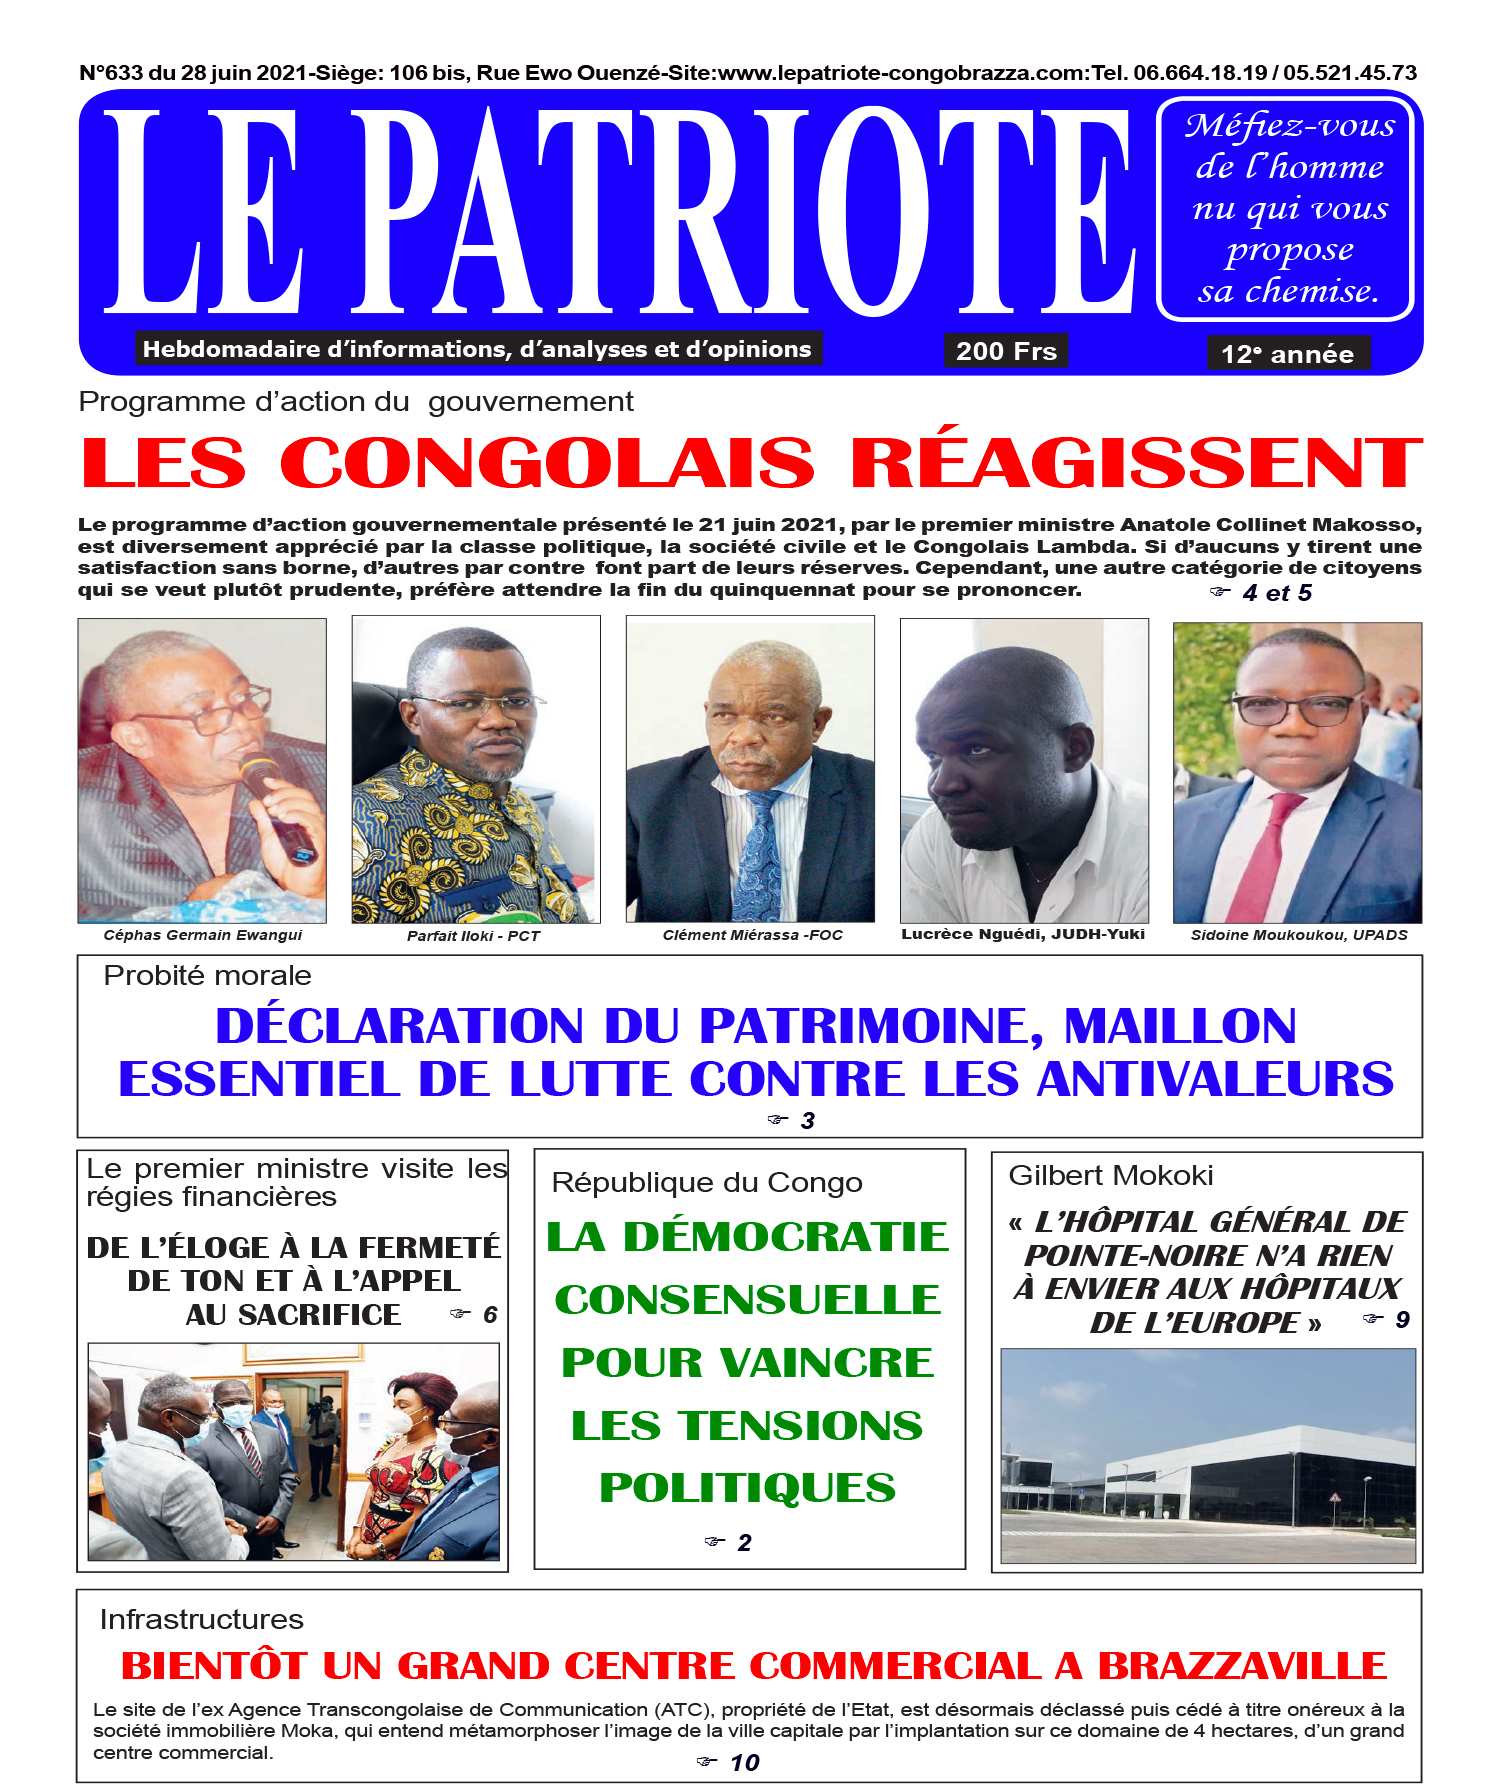 Cover Le Patriote - 633 